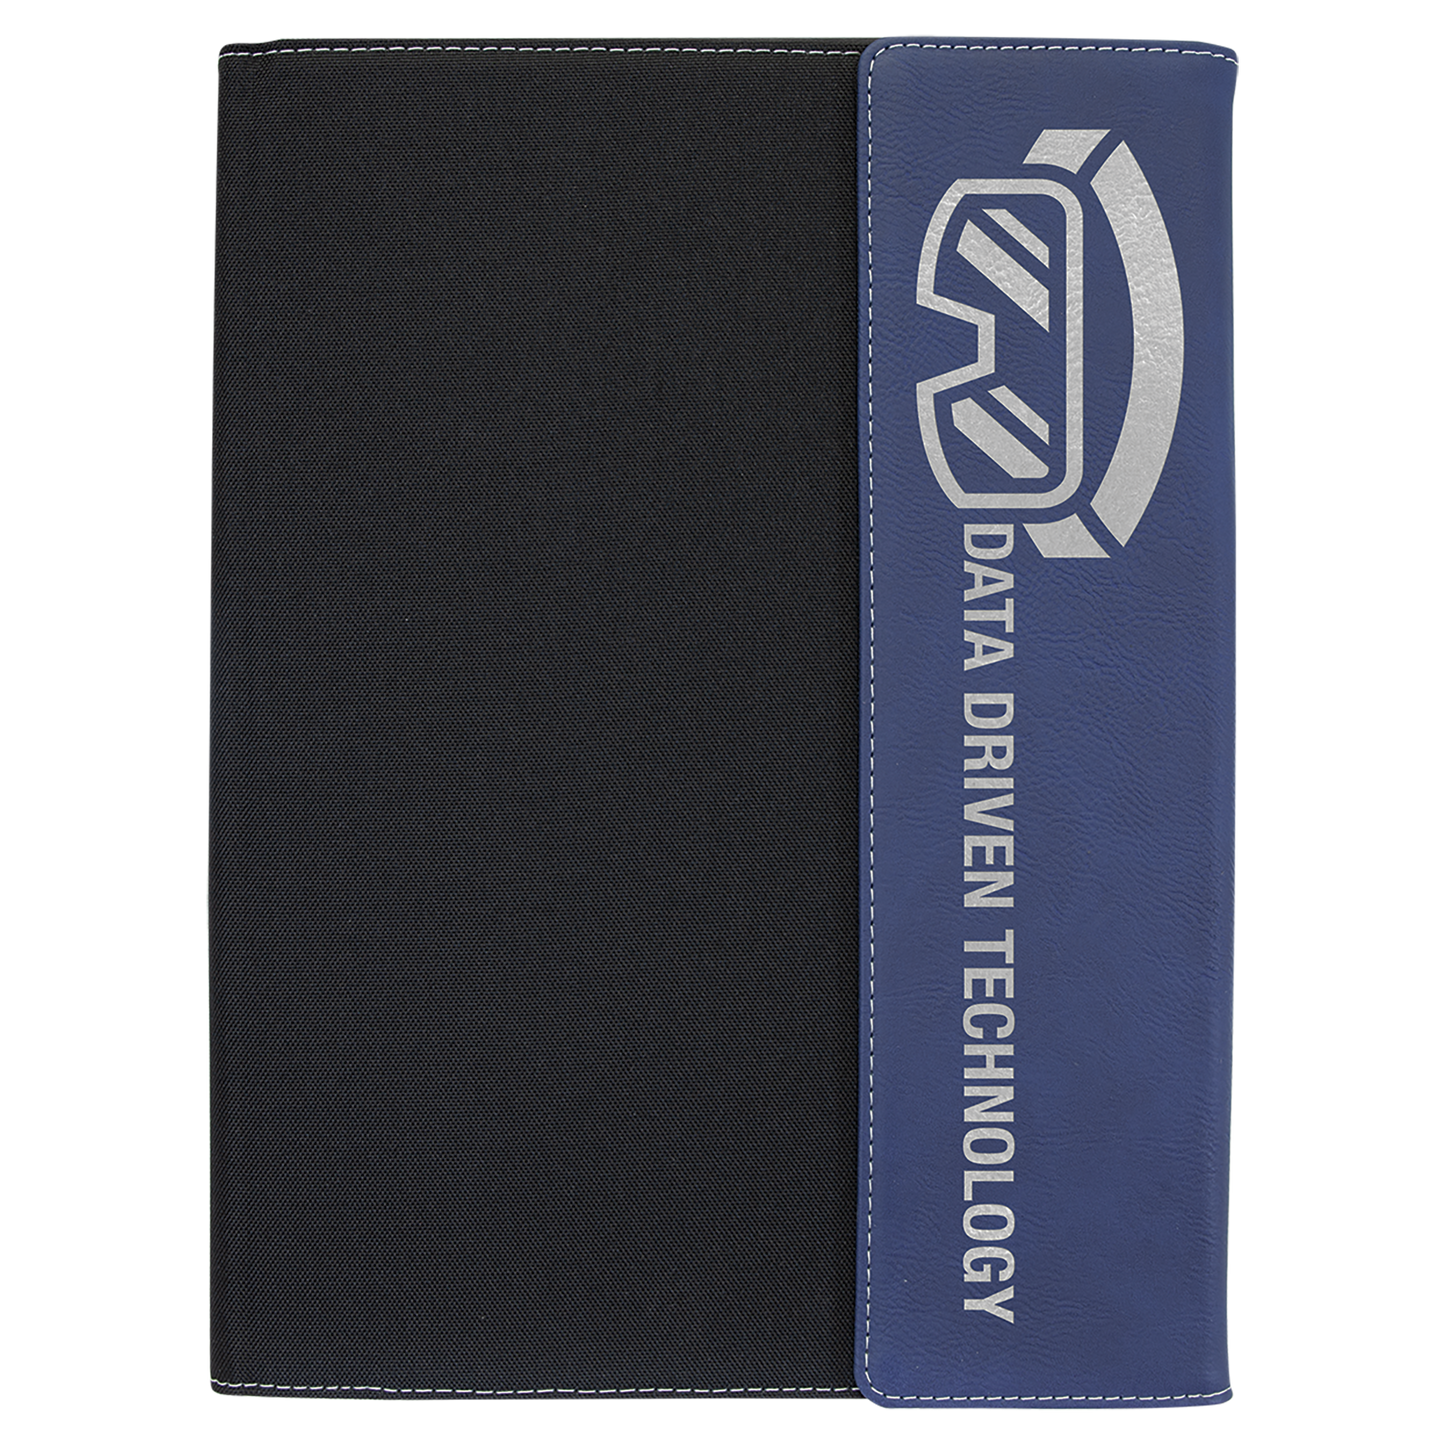 ΔΣΘ / Delta Sigma Theta Sorority, Inc.® Laserable Leatherette and Canvas Portfolio with Notepad Included